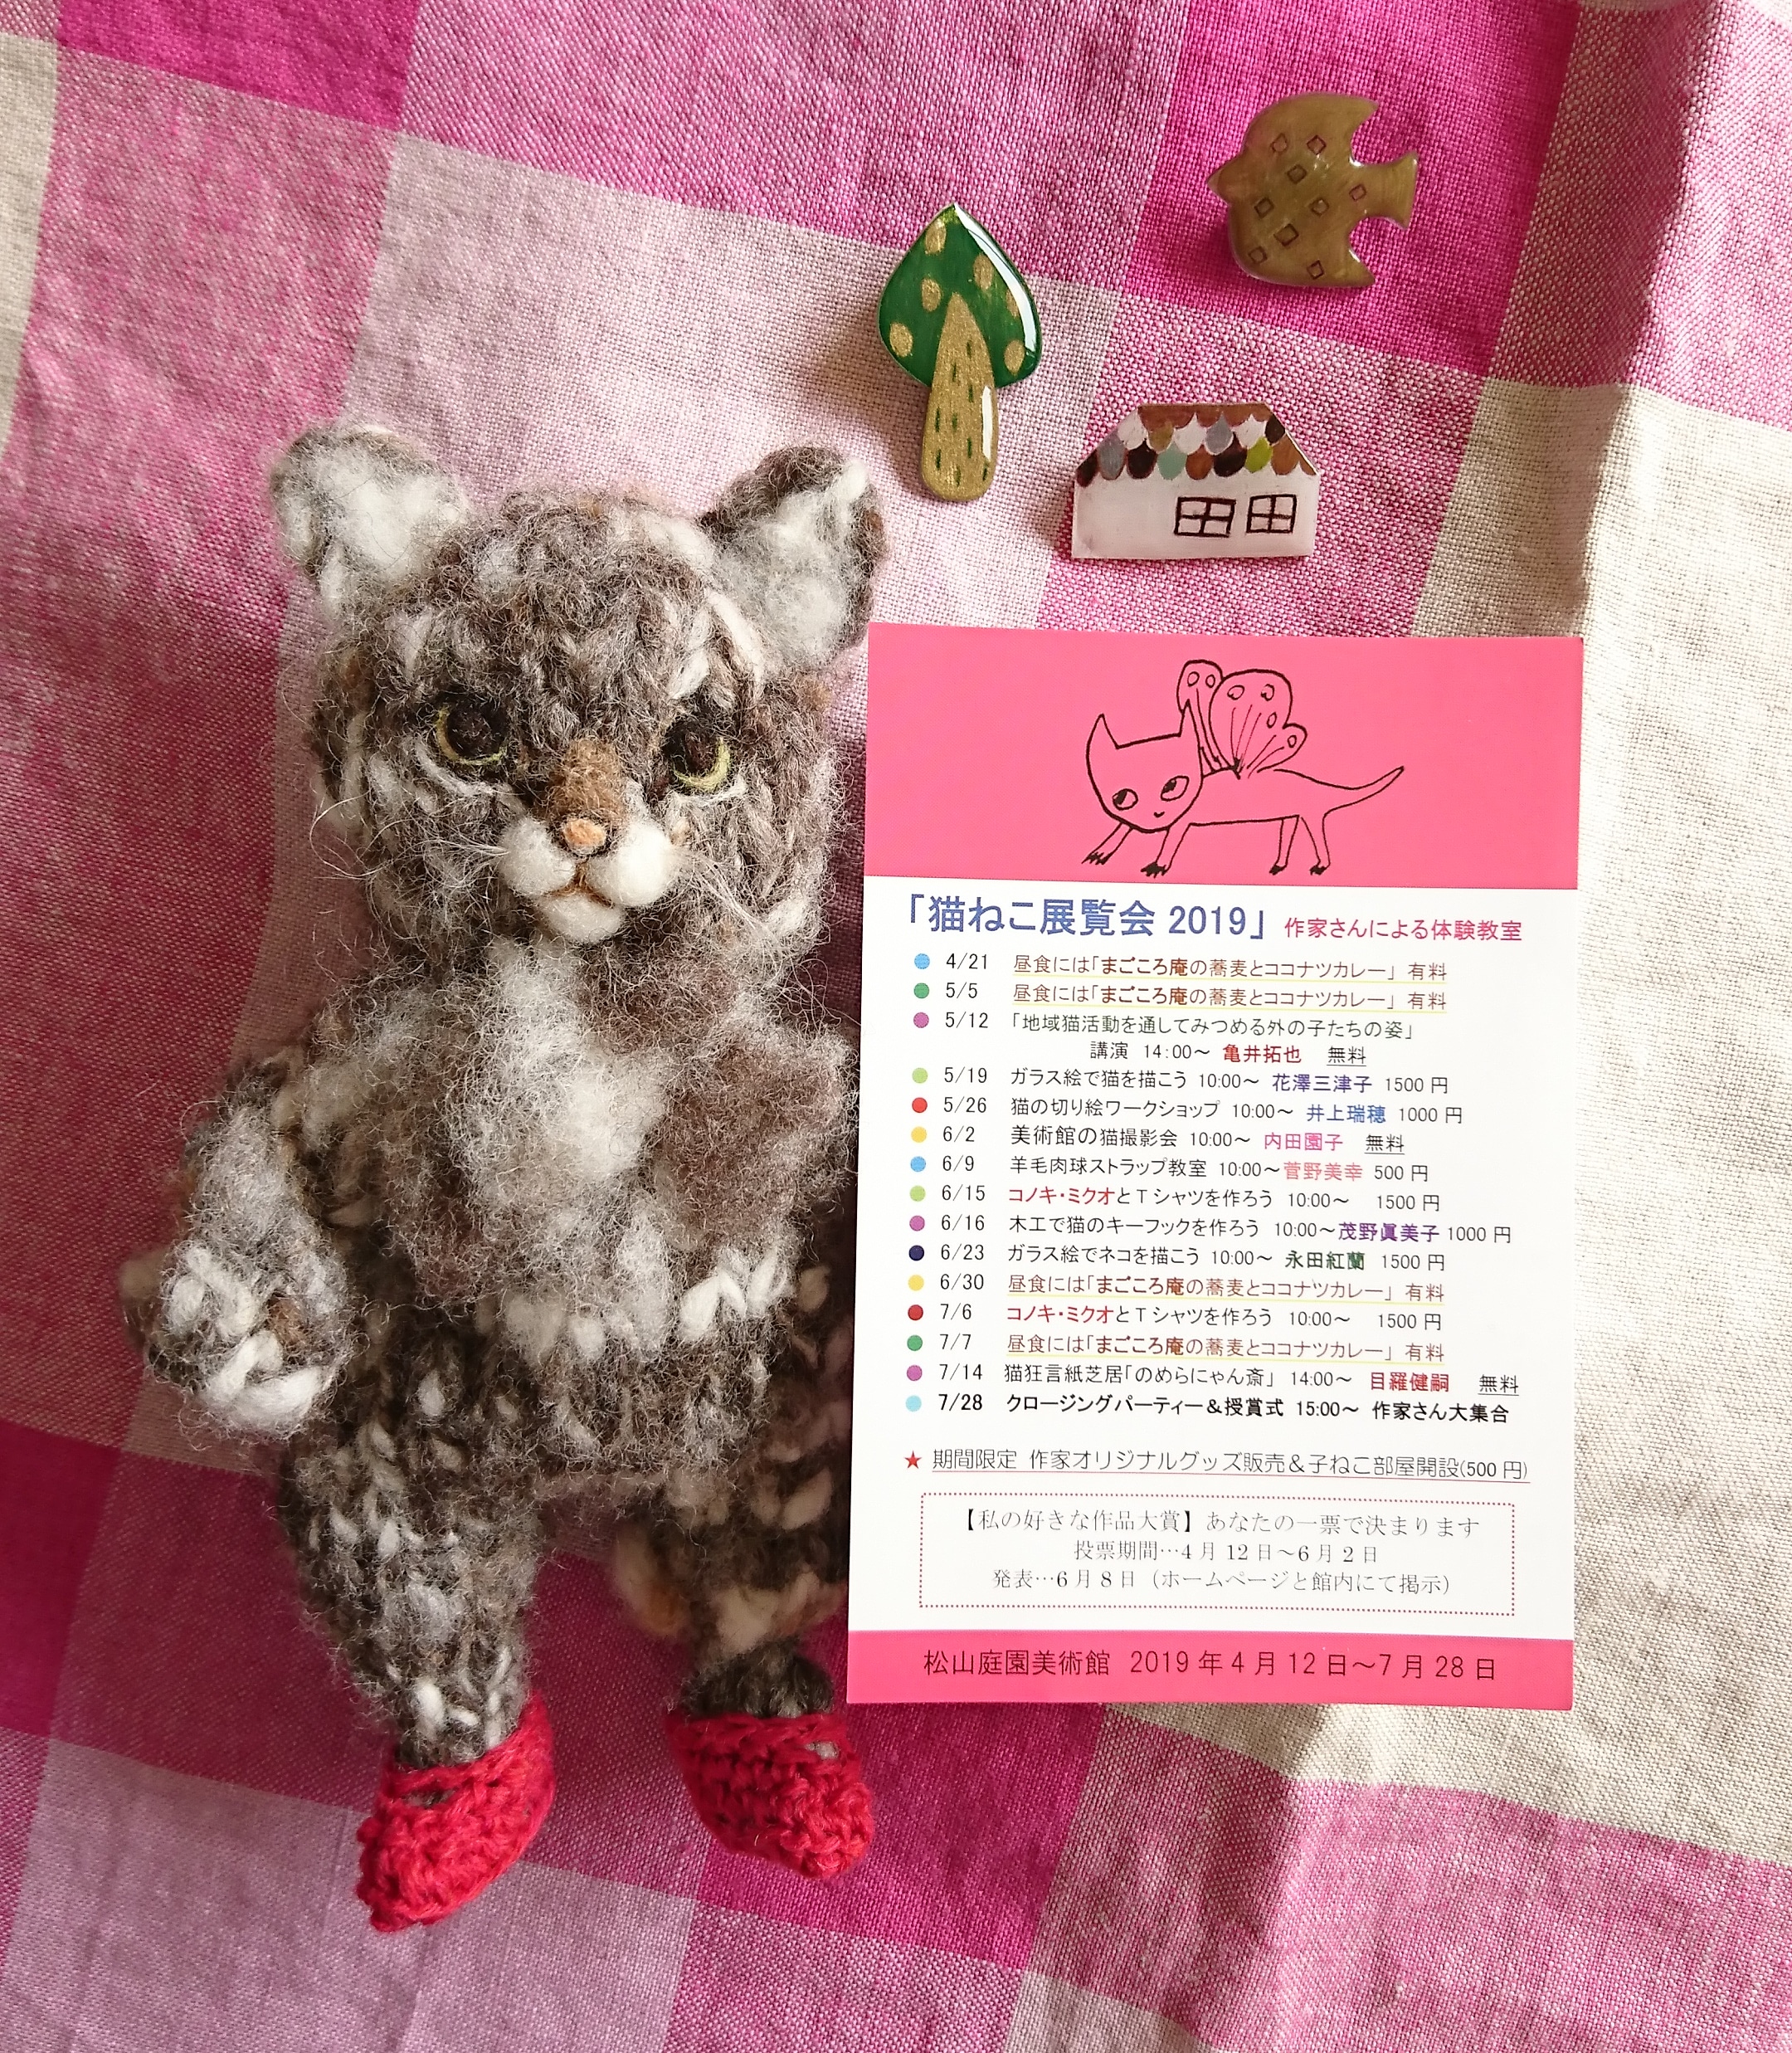 『猫ねこ展覧会2019』 松山庭園美術館